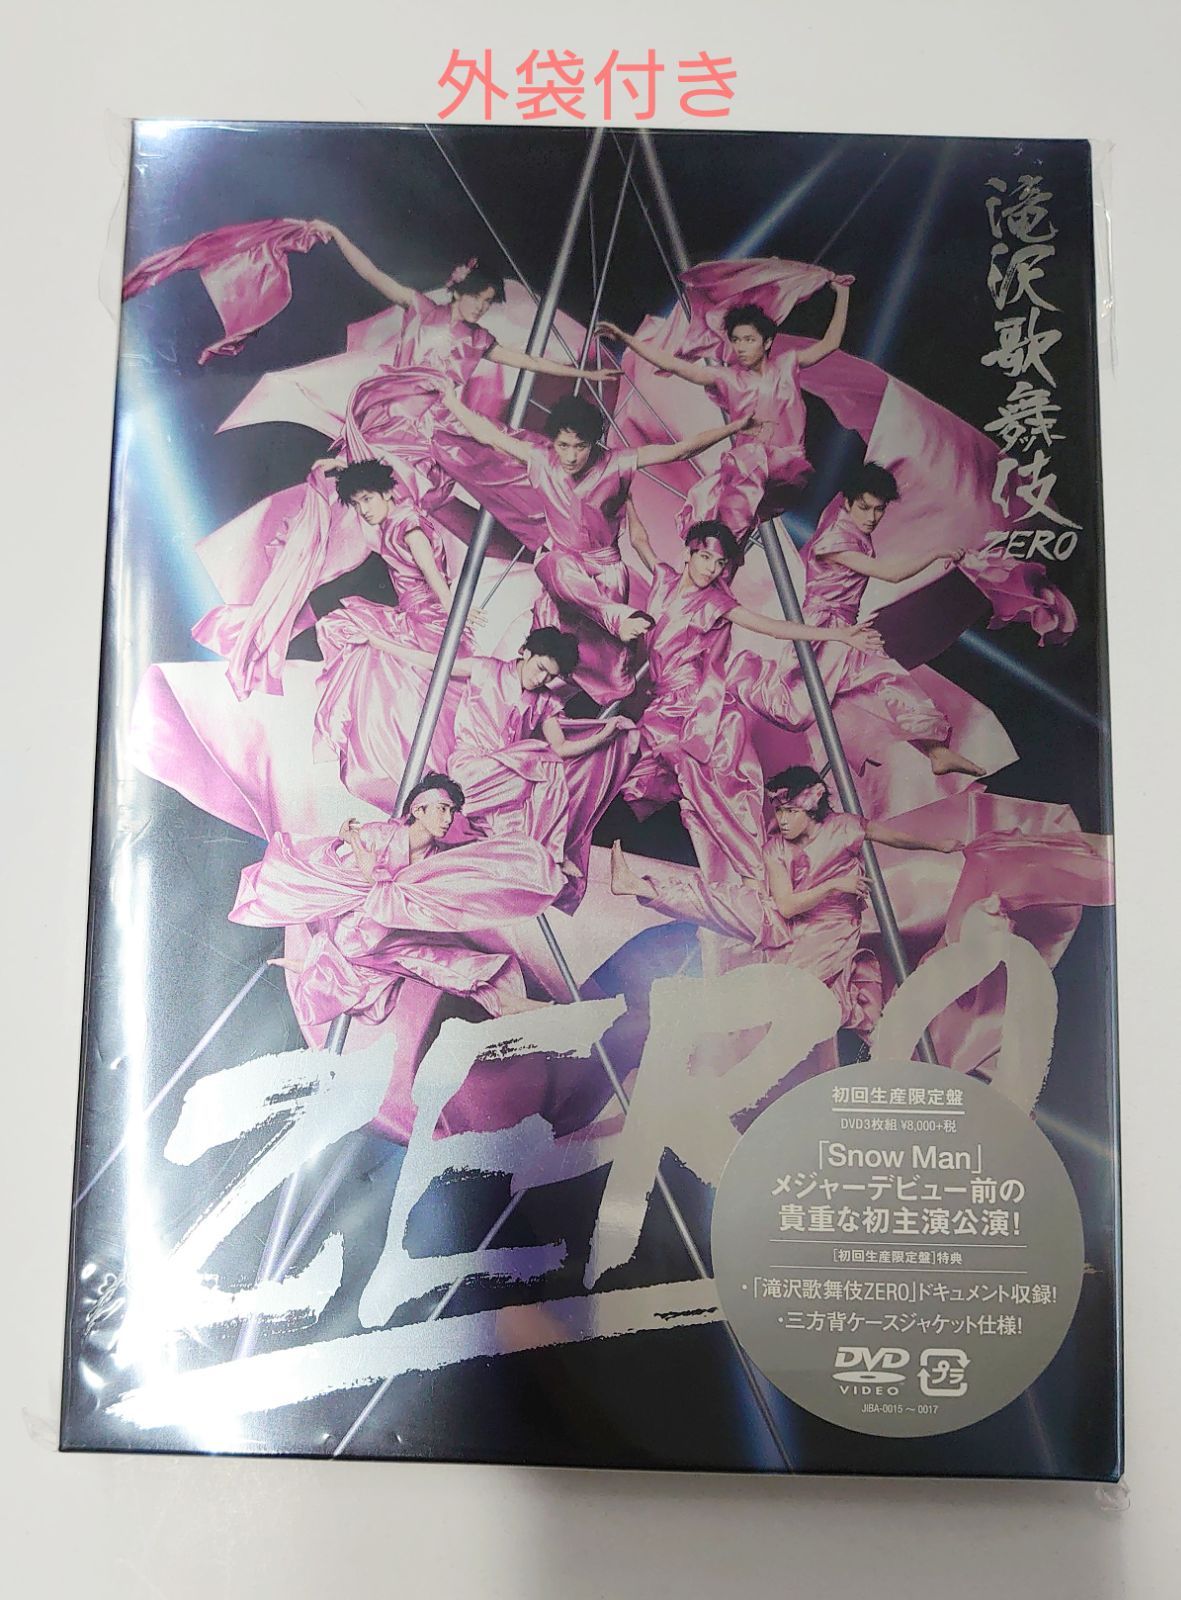 滝沢歌舞伎ZERO 初回生産限定盤 DVD3枚組 - お笑い・バラエティ